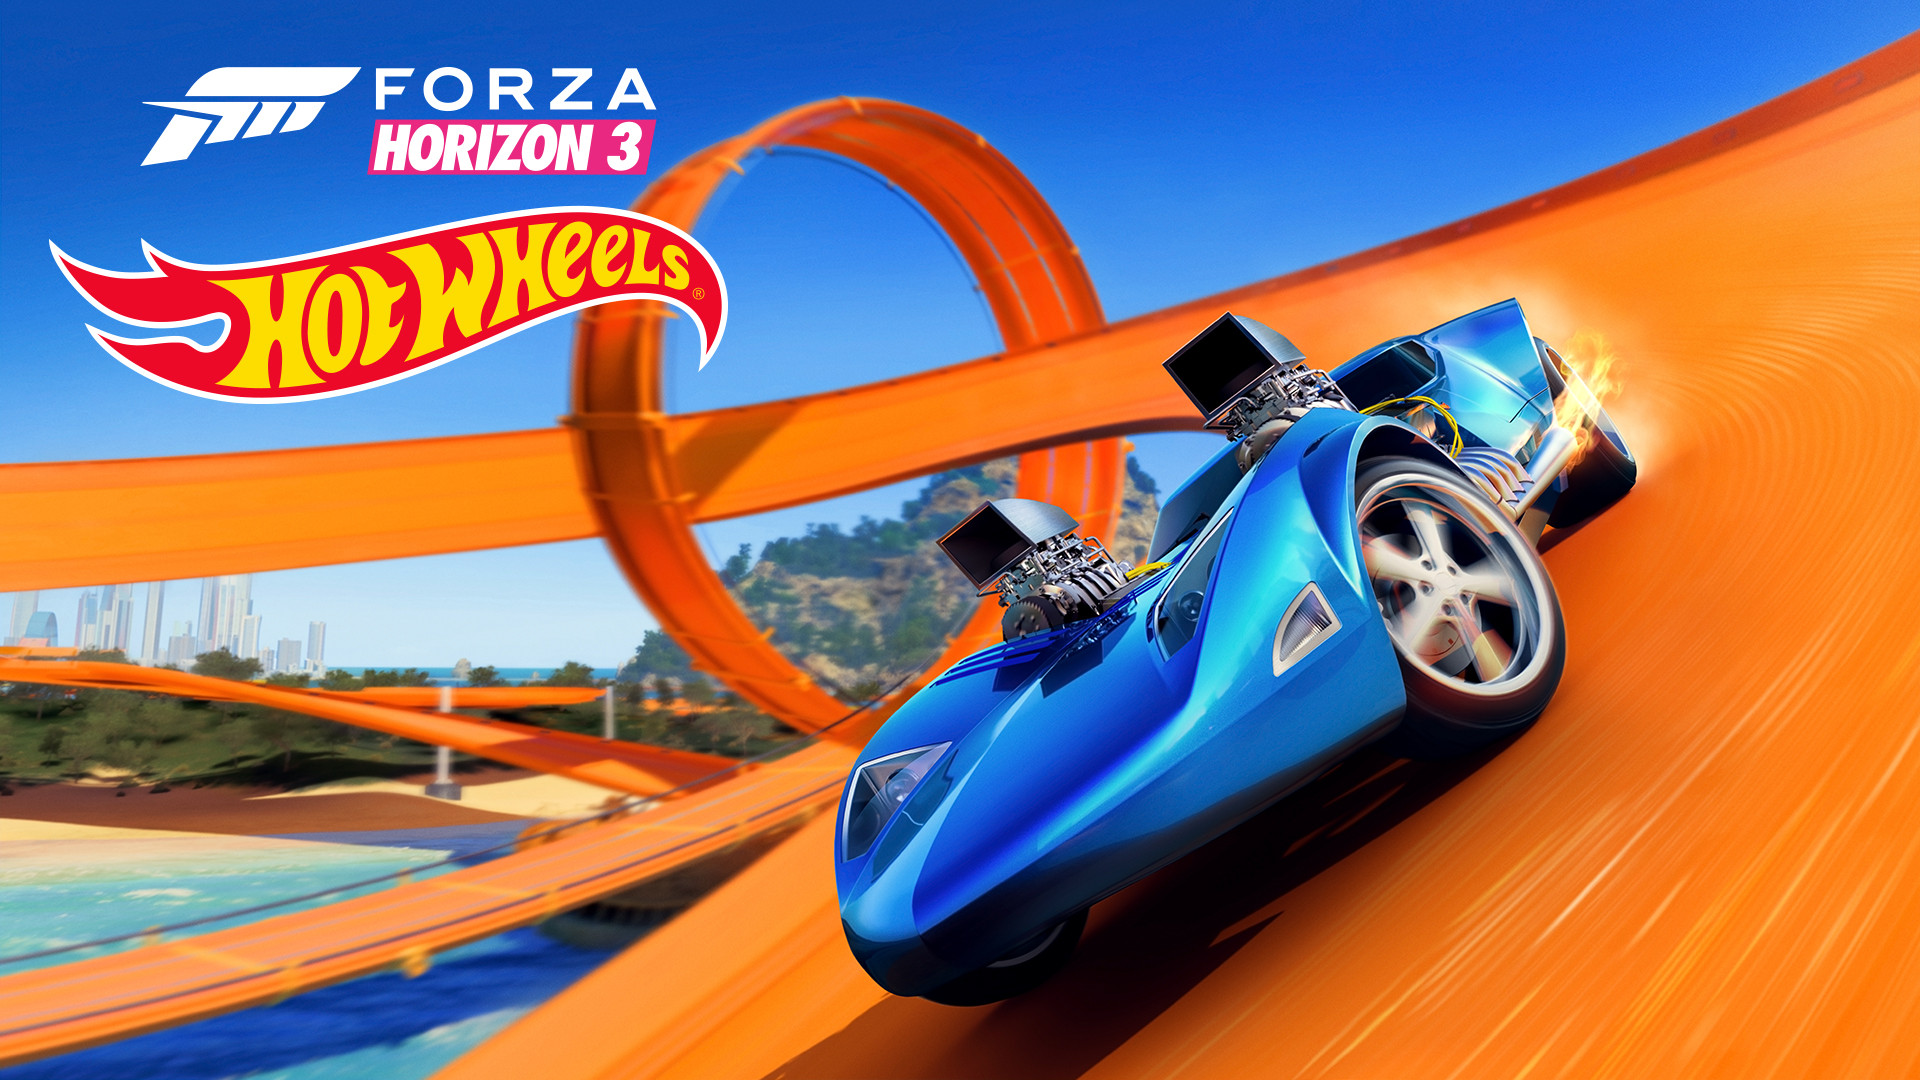 Forza Horizon 3 Free Download